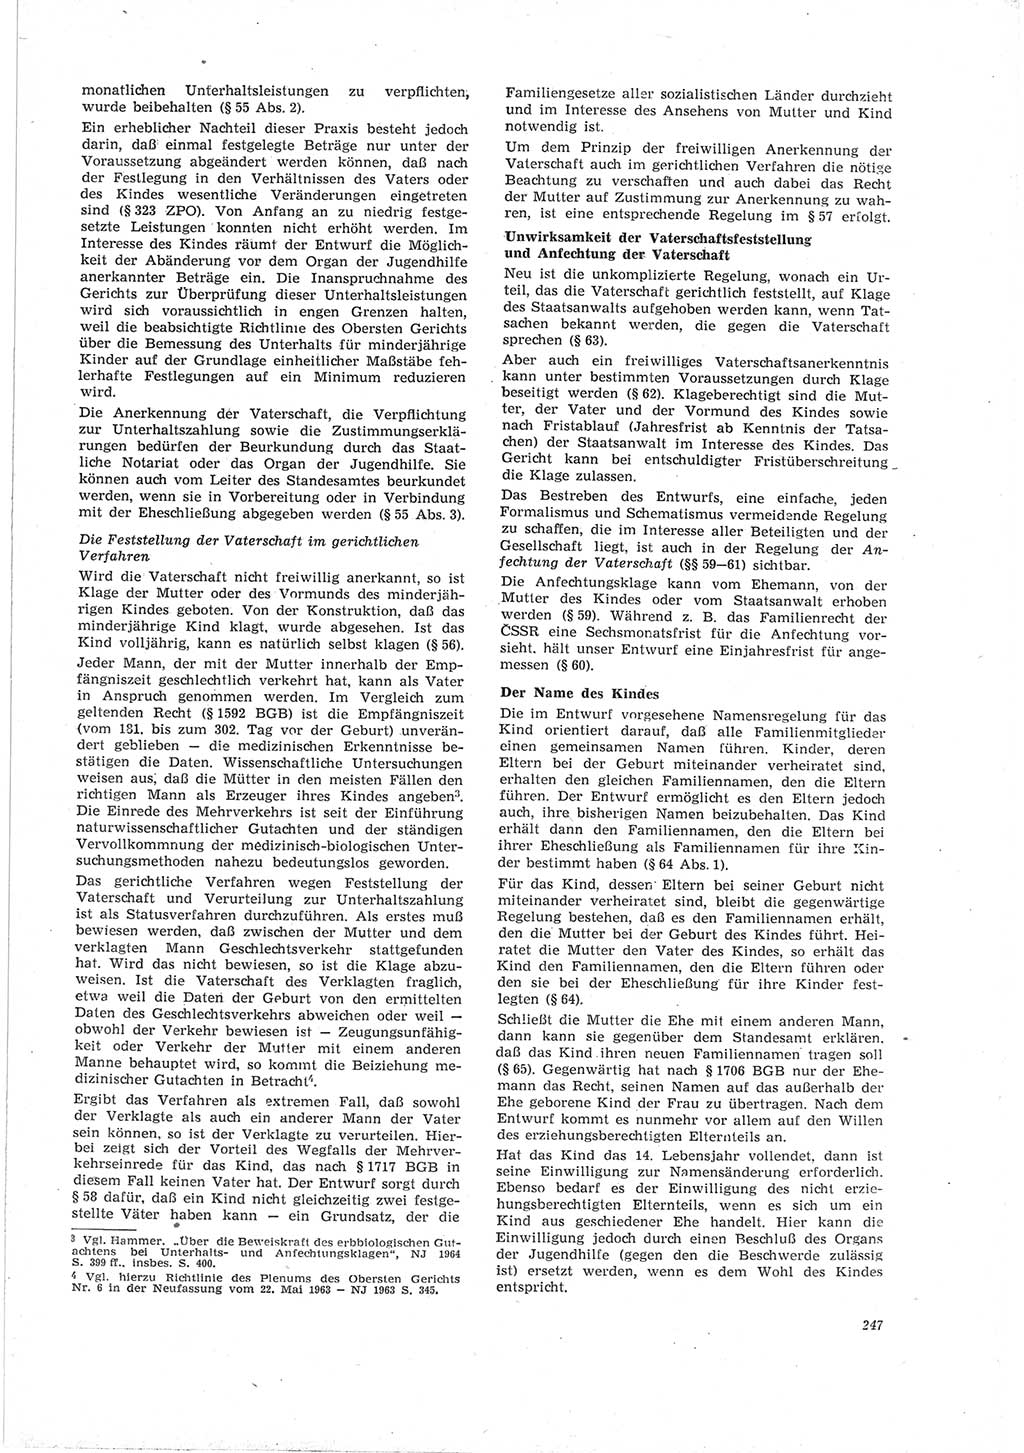 Neue Justiz (NJ), Zeitschrift für Recht und Rechtswissenschaft [Deutsche Demokratische Republik (DDR)], 19. Jahrgang 1965, Seite 247 (NJ DDR 1965, S. 247)